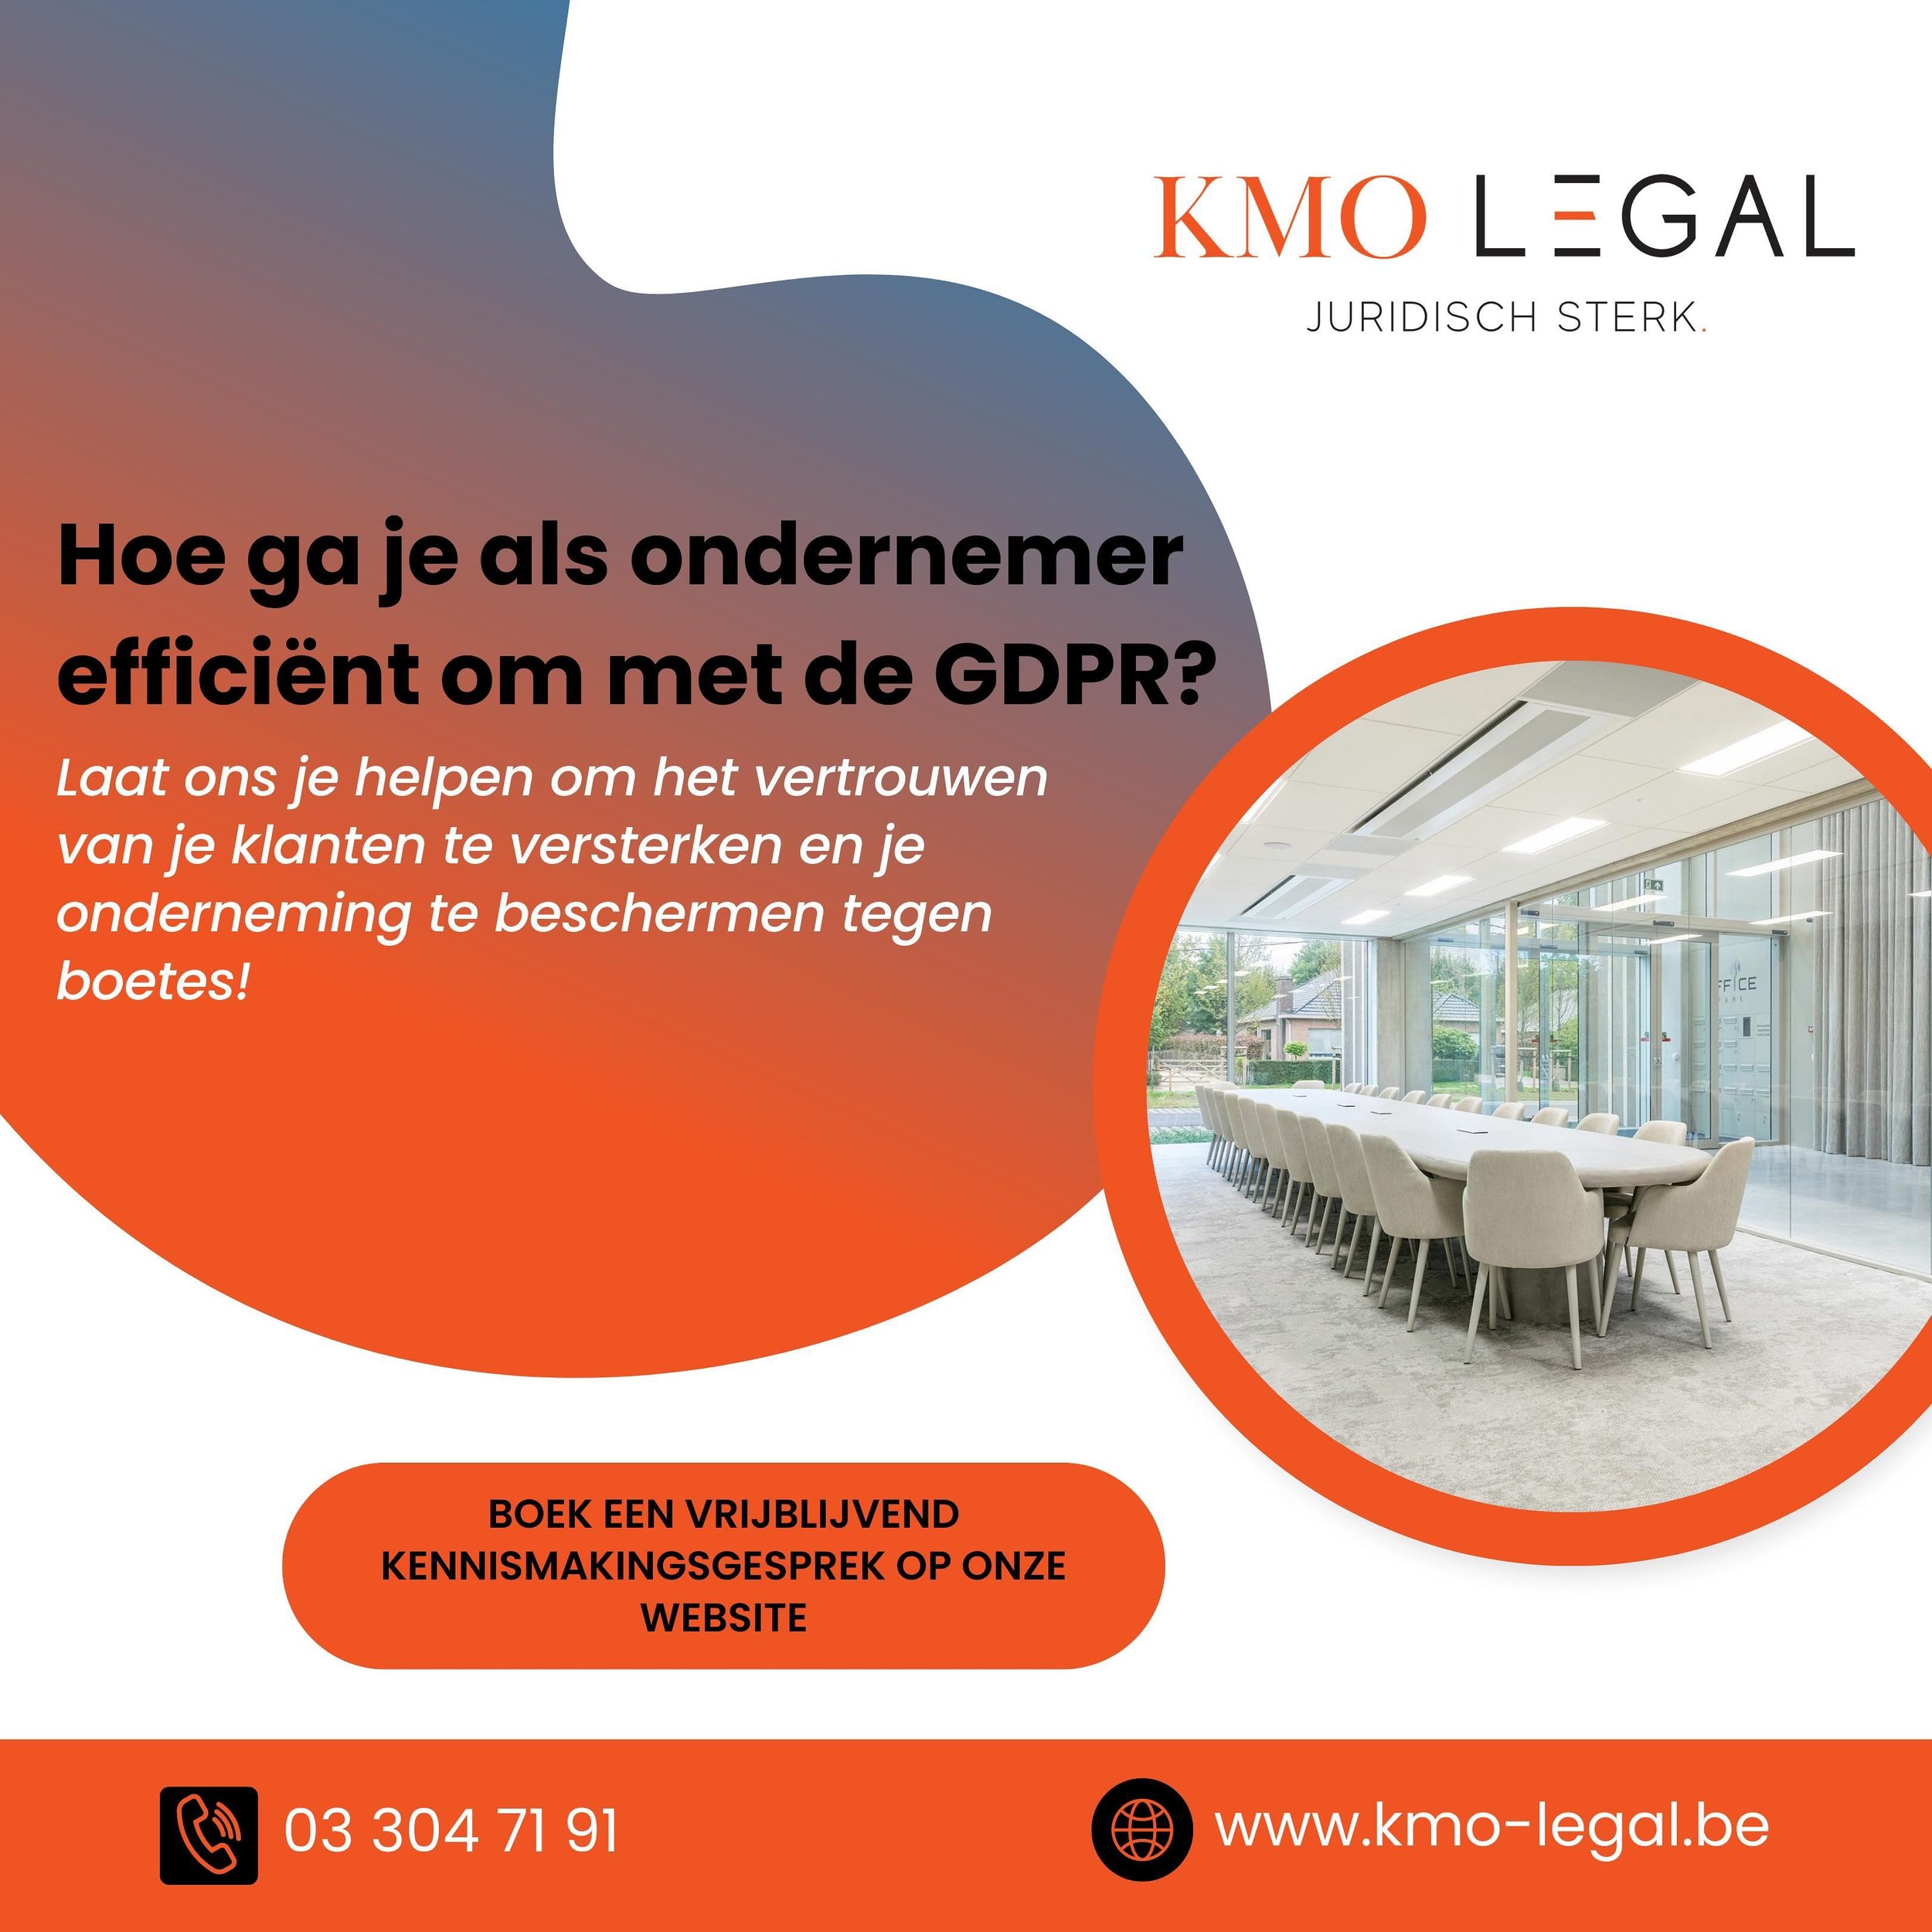 Versterk het vertrouwen van je klanten en bescherm je onderneming! 

Boek nu een vrijblijvend kennismakingsgesprek via www.kmo-legal.be/meeting 

#gdpr